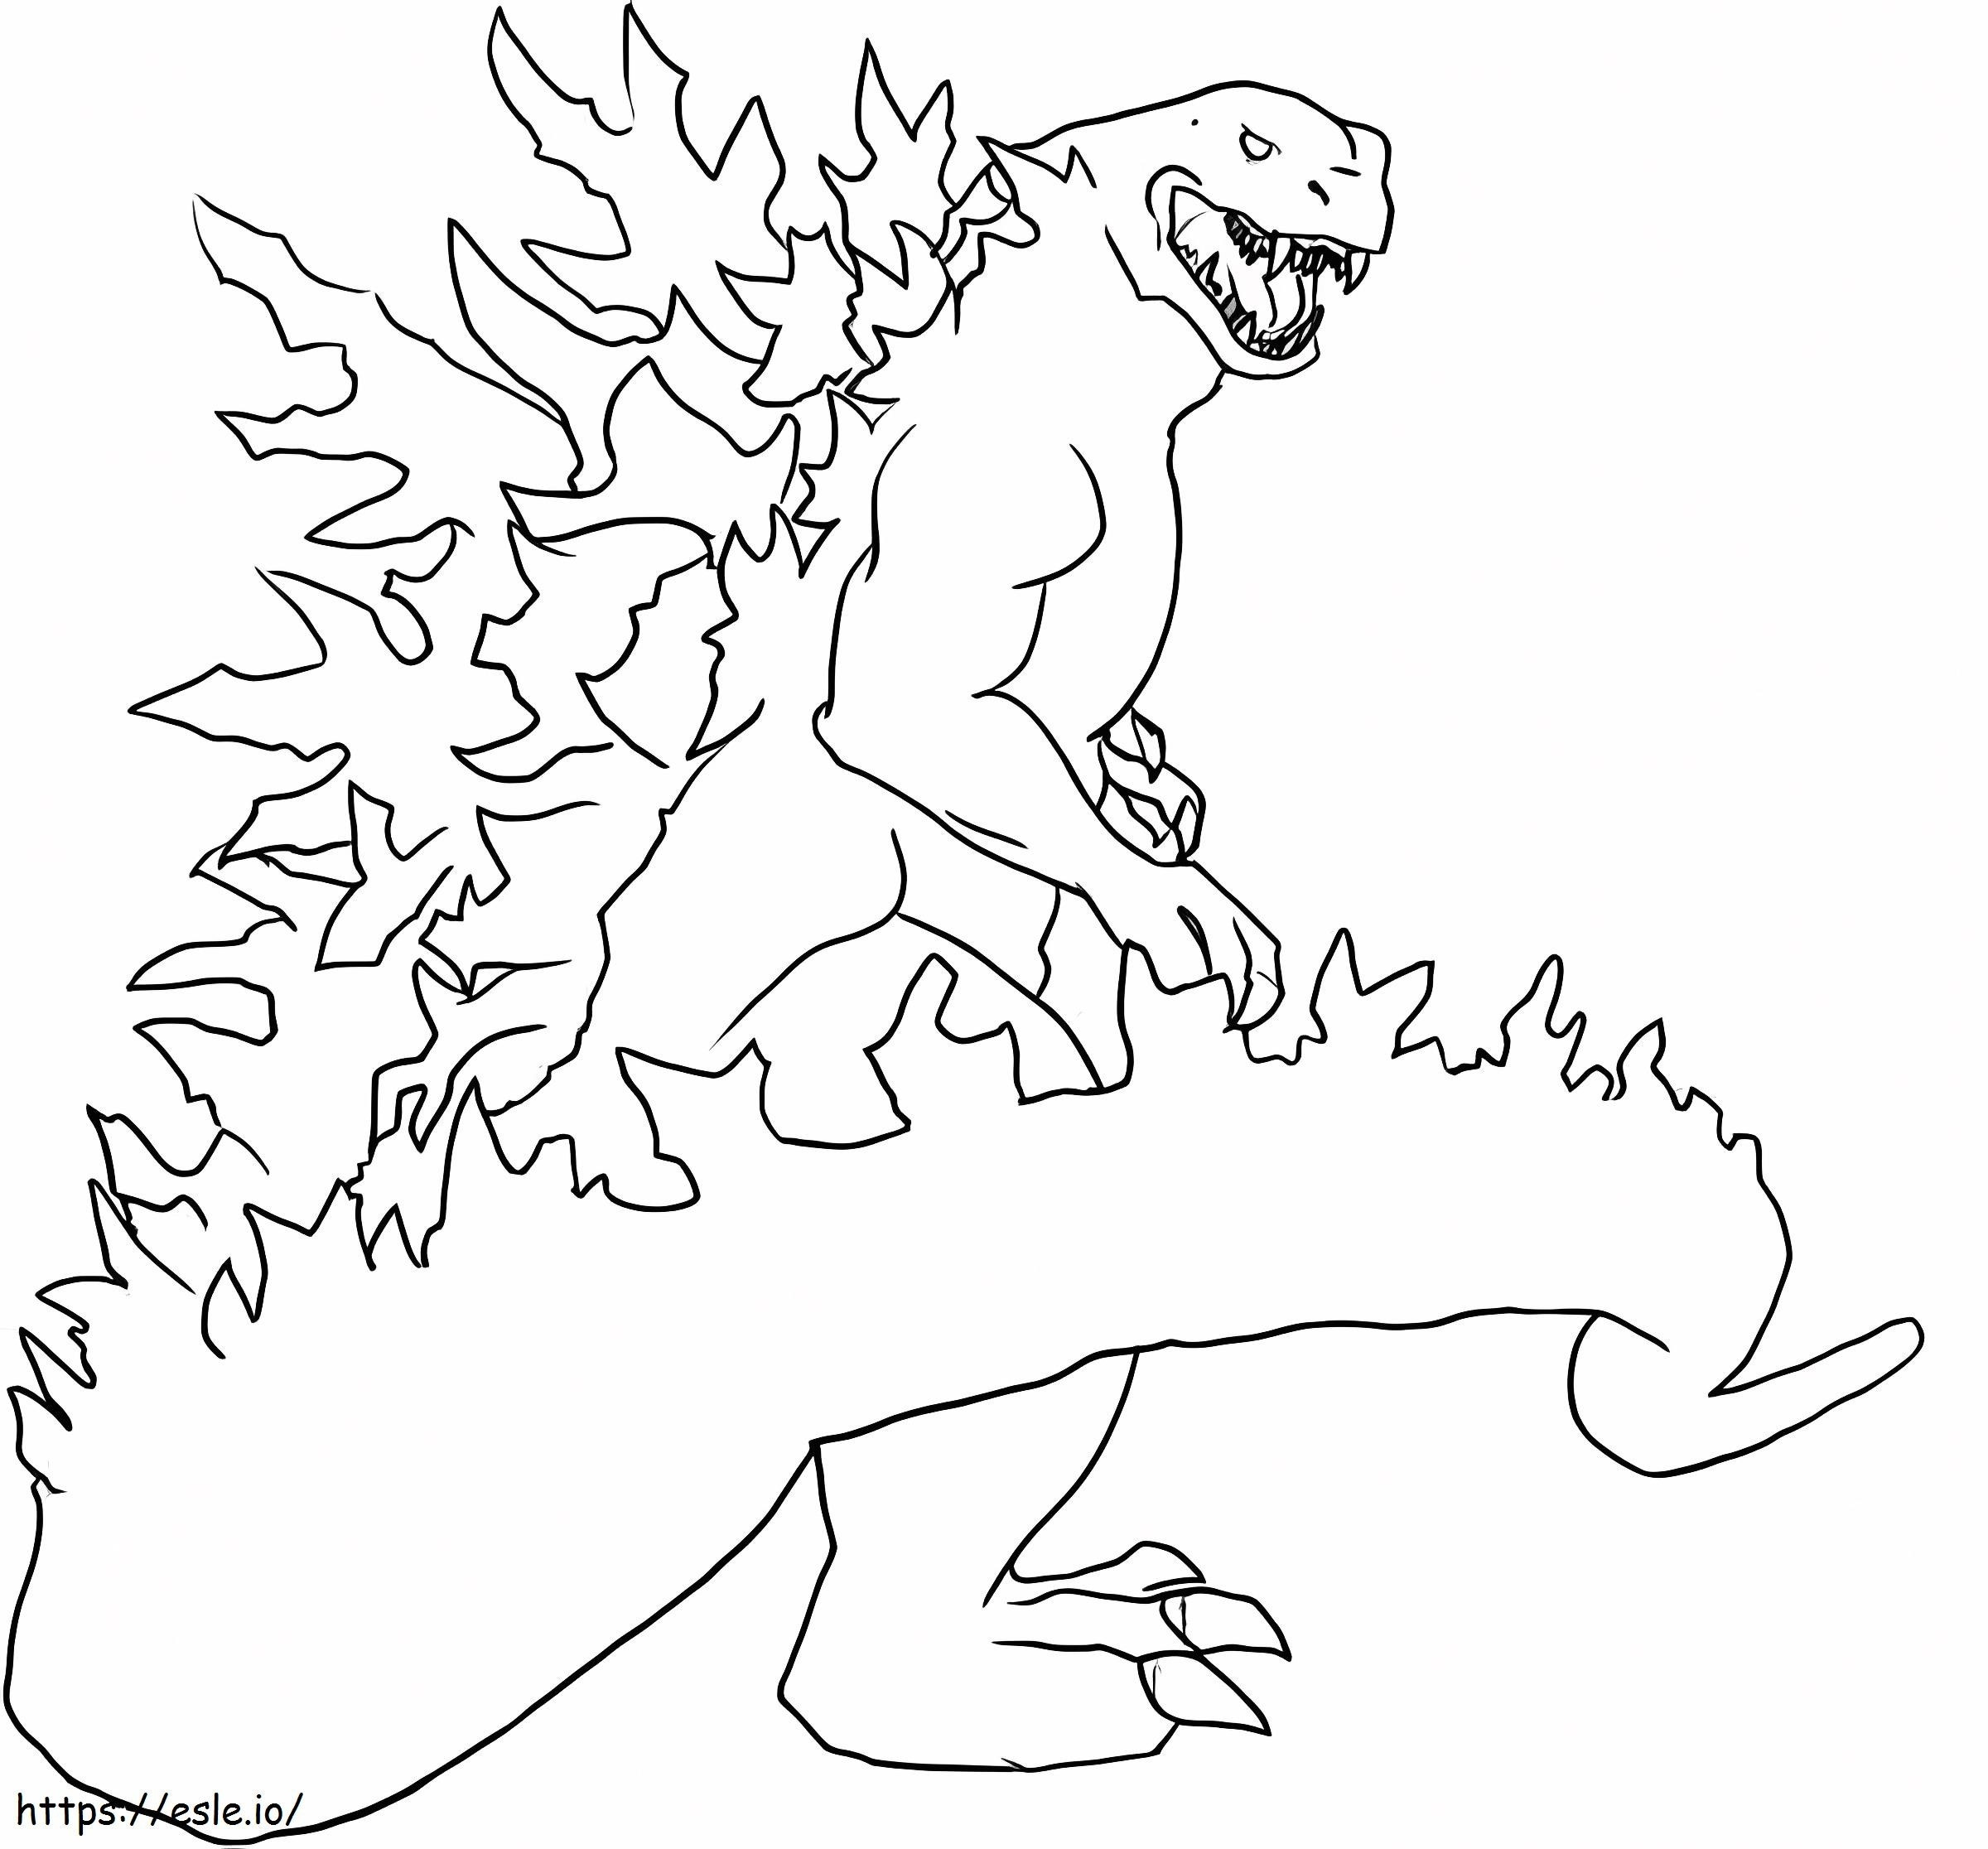 Godzilla el monstruo para colorear